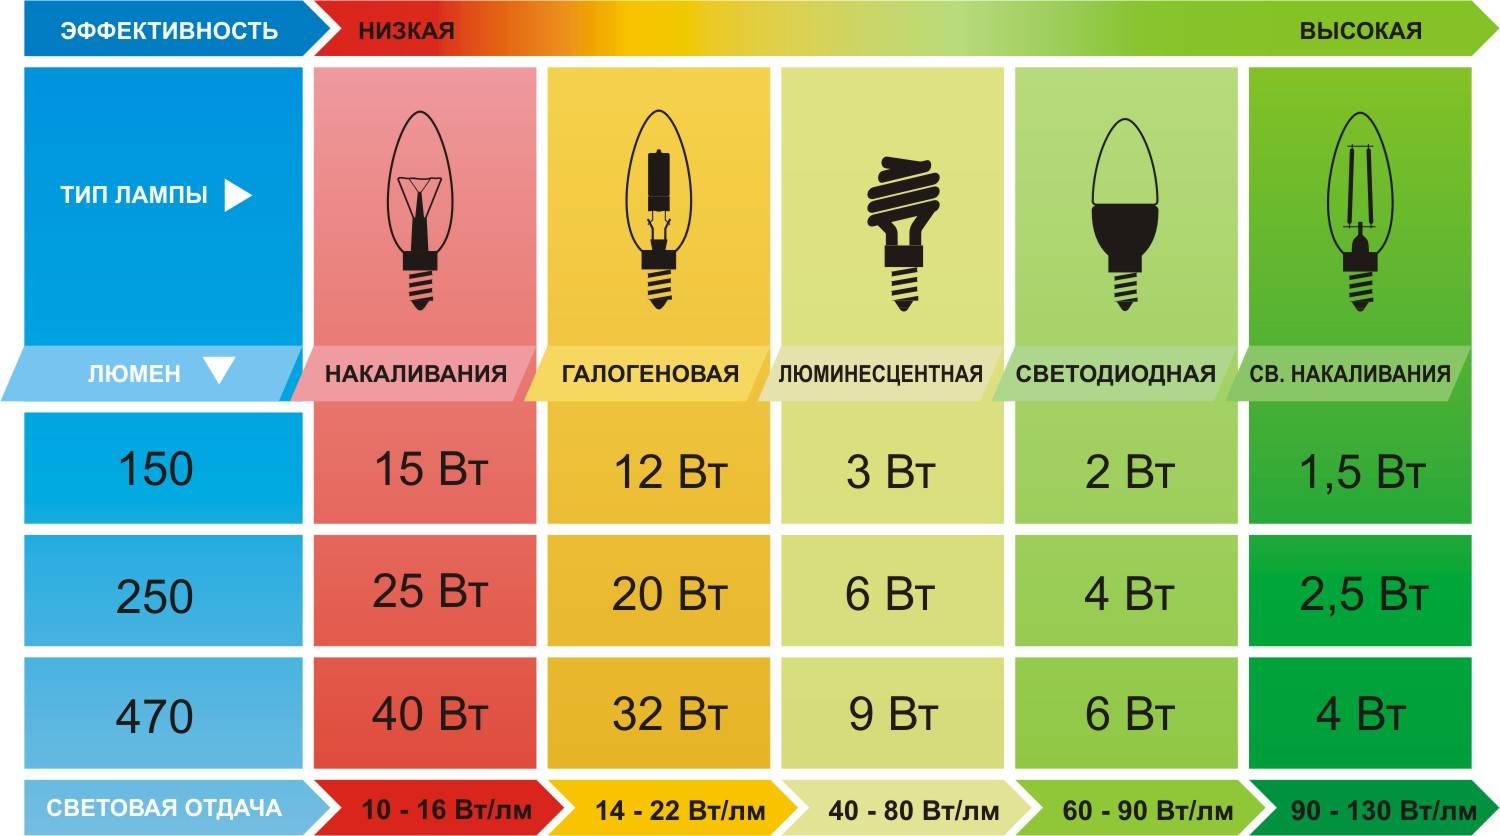 Световые показатели разных видов лампочек 